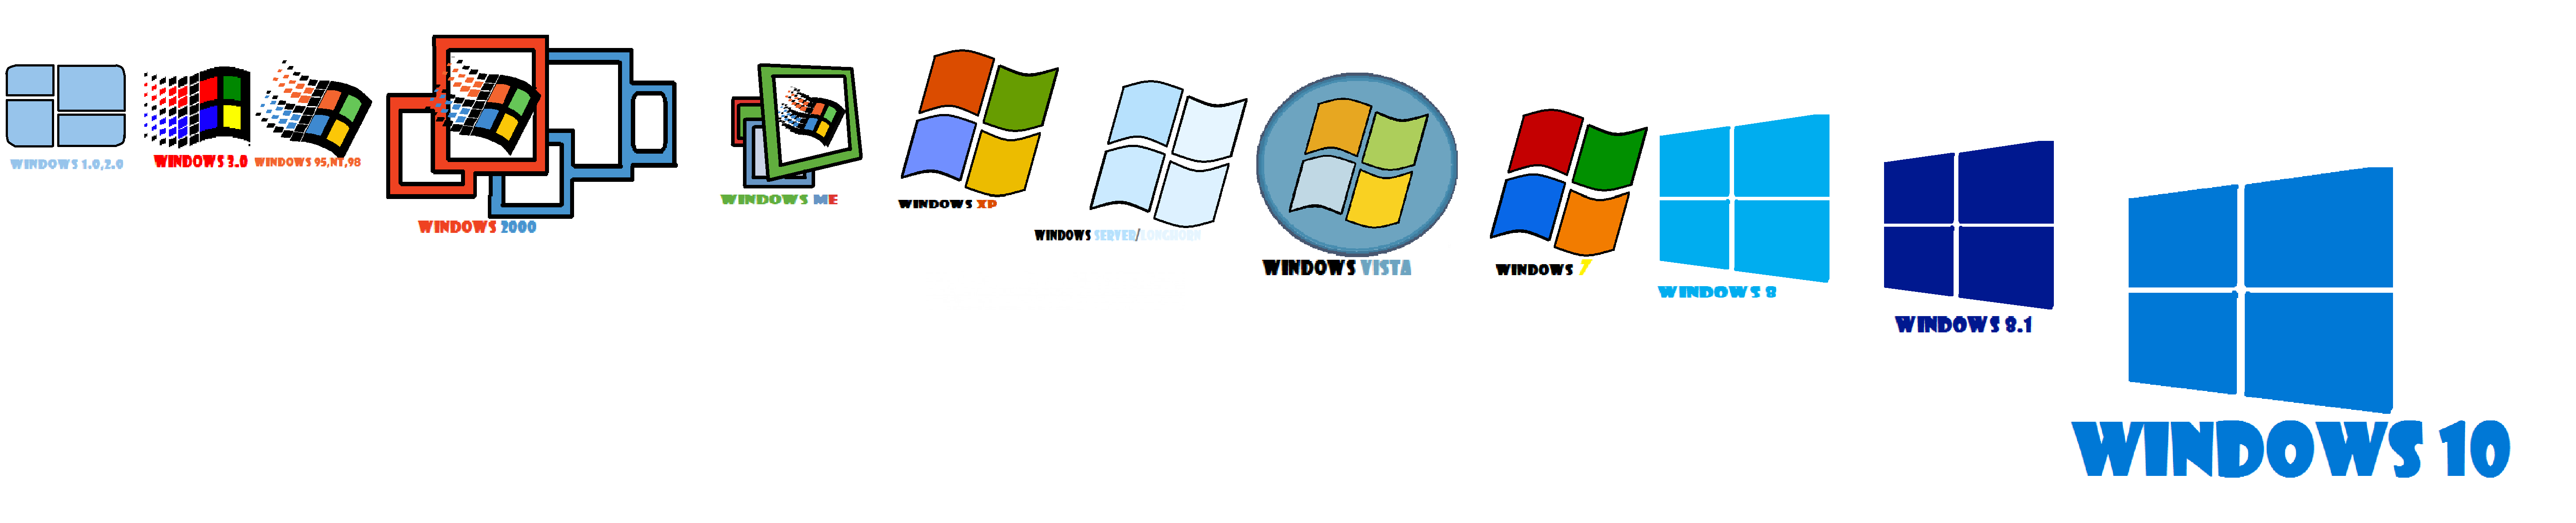 Каждая версия Windows поставляет с набором встроенных десктопных программ, составляющих одну большую группу под названием Стандартные